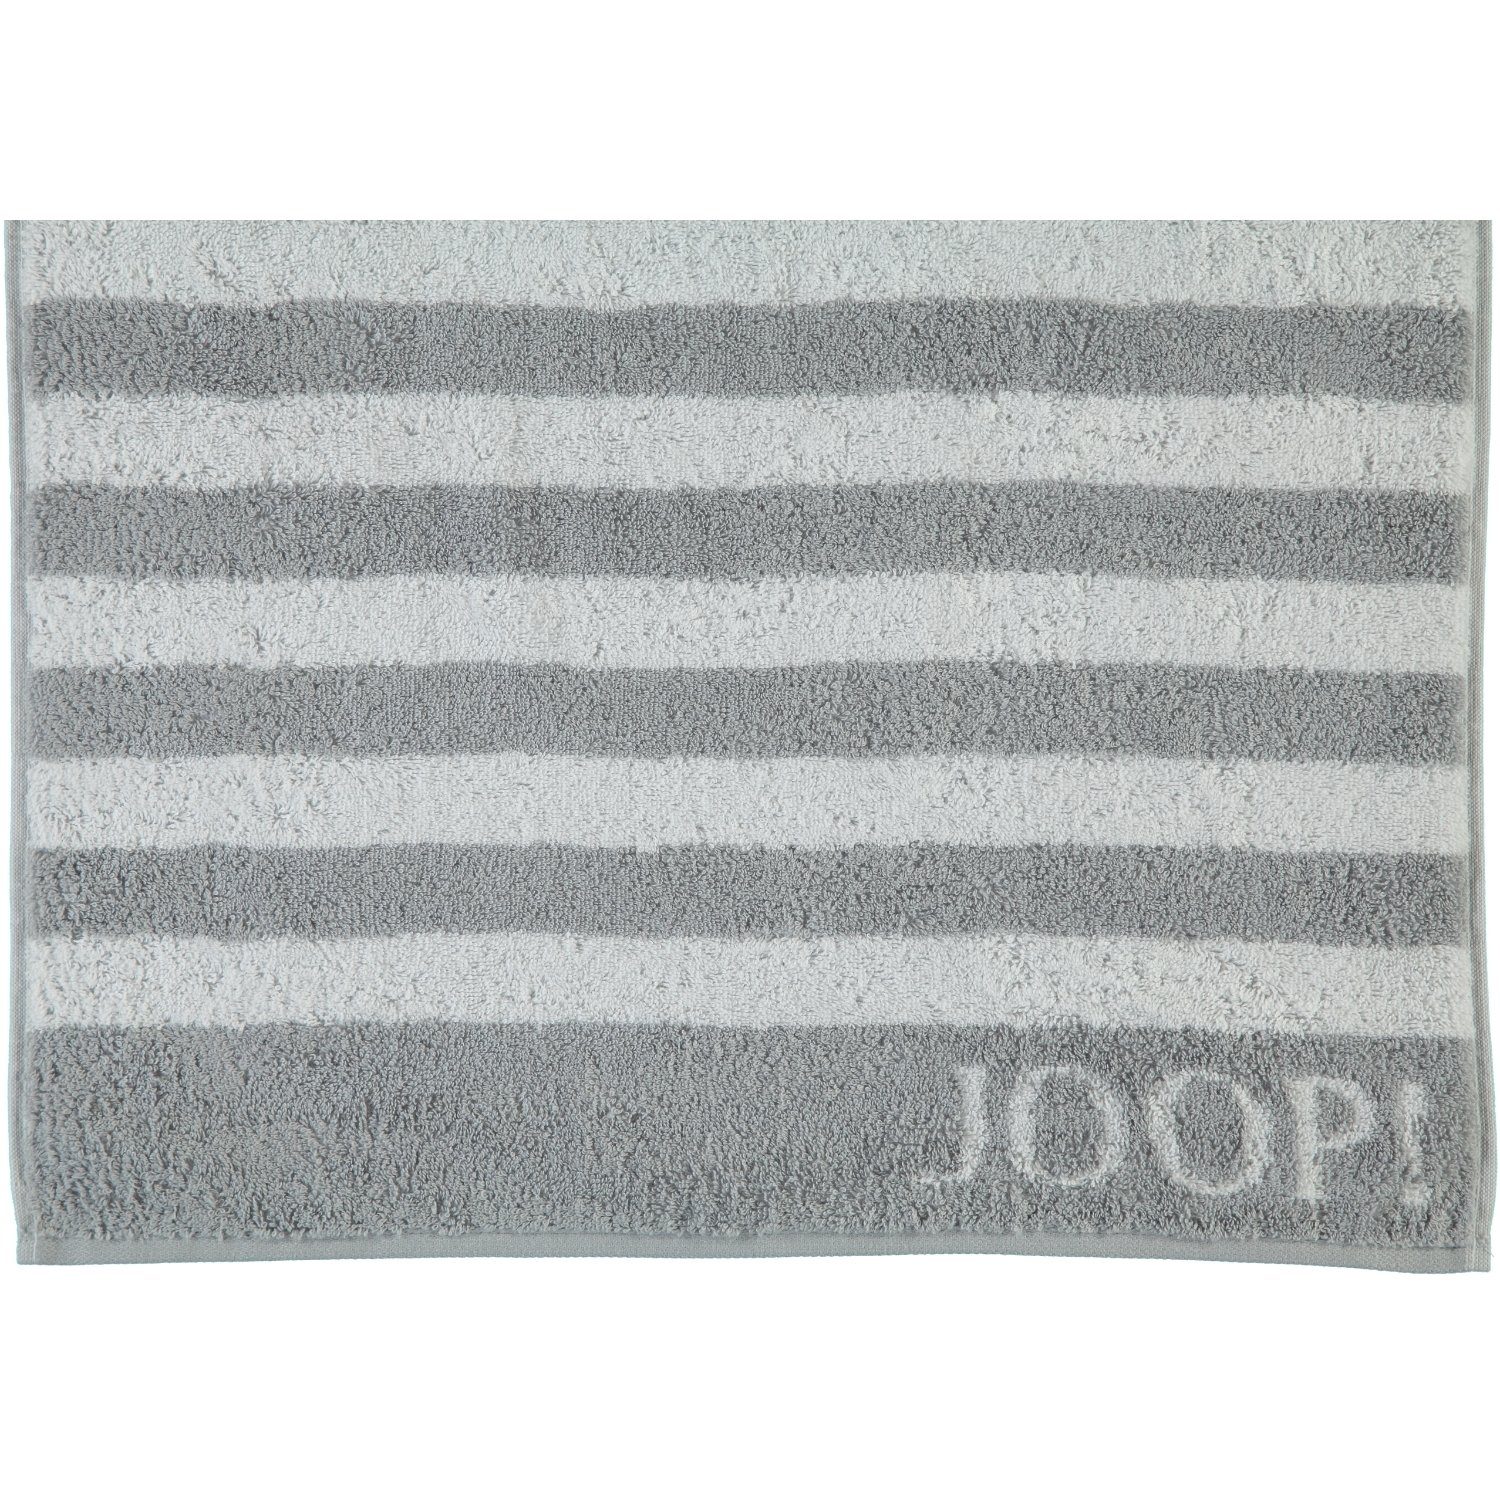 1610, 100% Joop! (76) Stripes Baumwolle Handtücher Classic Silber